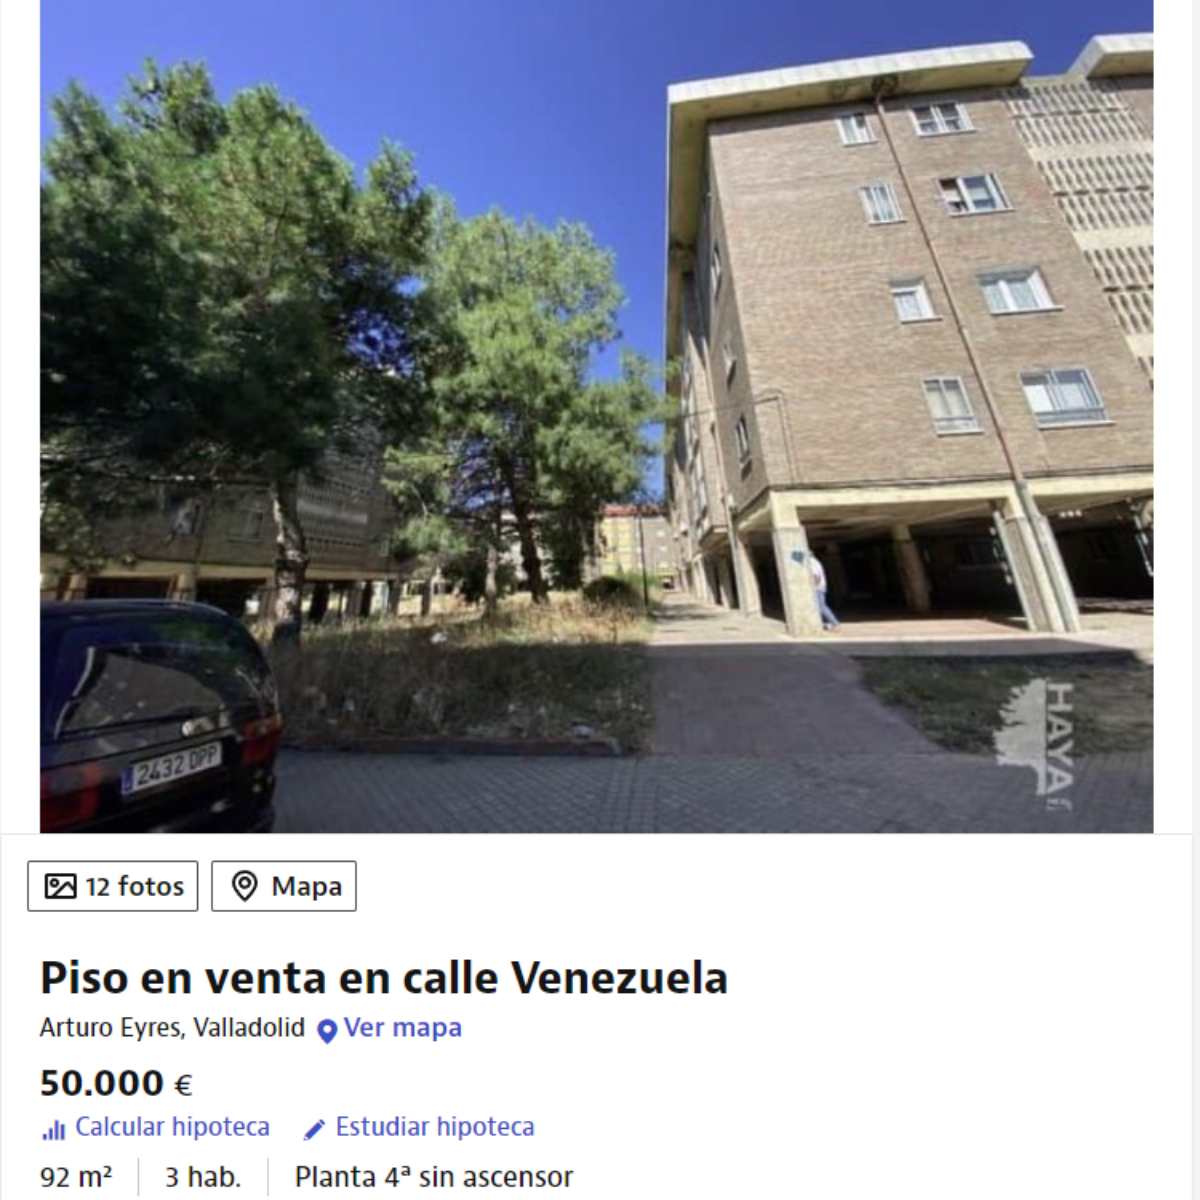 Piso en venta en Valladolid por un precio de 50.000 euros 